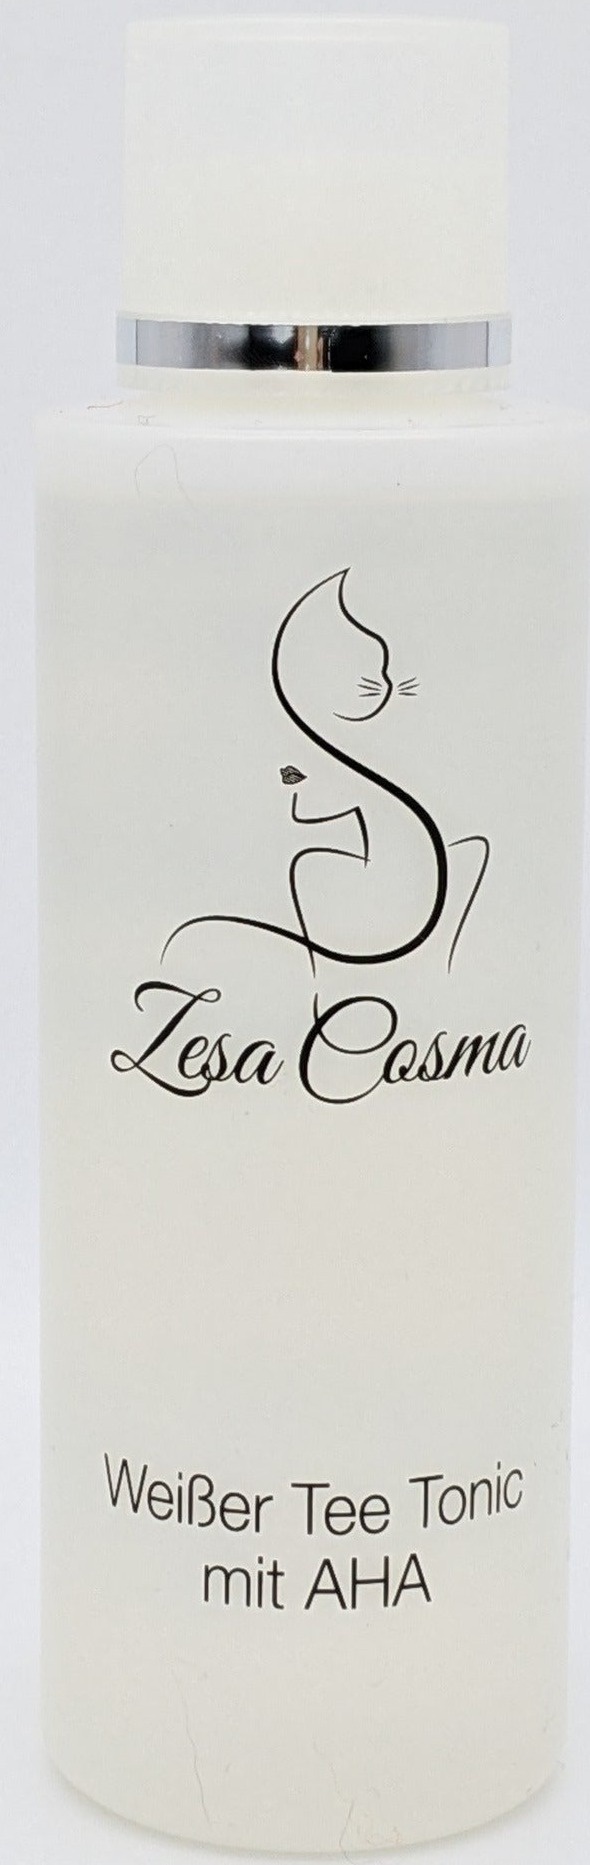 Zesa Cosma Weißer Tee Tonic Mit AHA